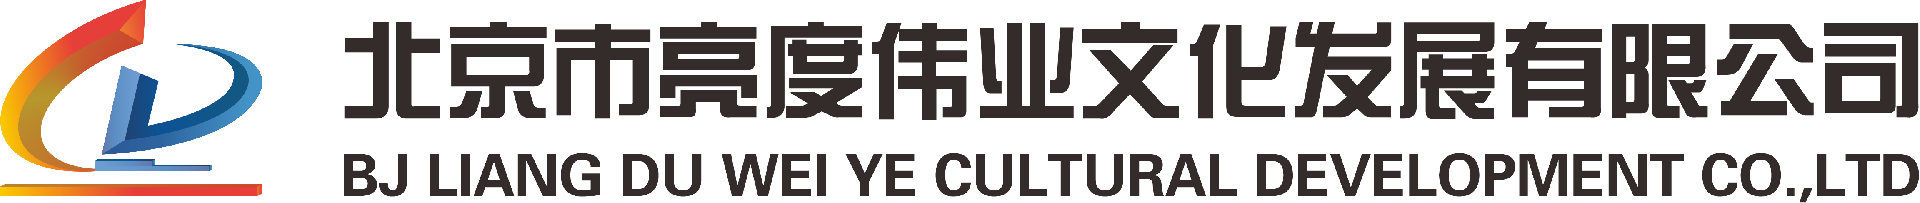 公司资质-北京市亮度伟业文化发展有限公司-北京市亮度伟业文化发展有限公司